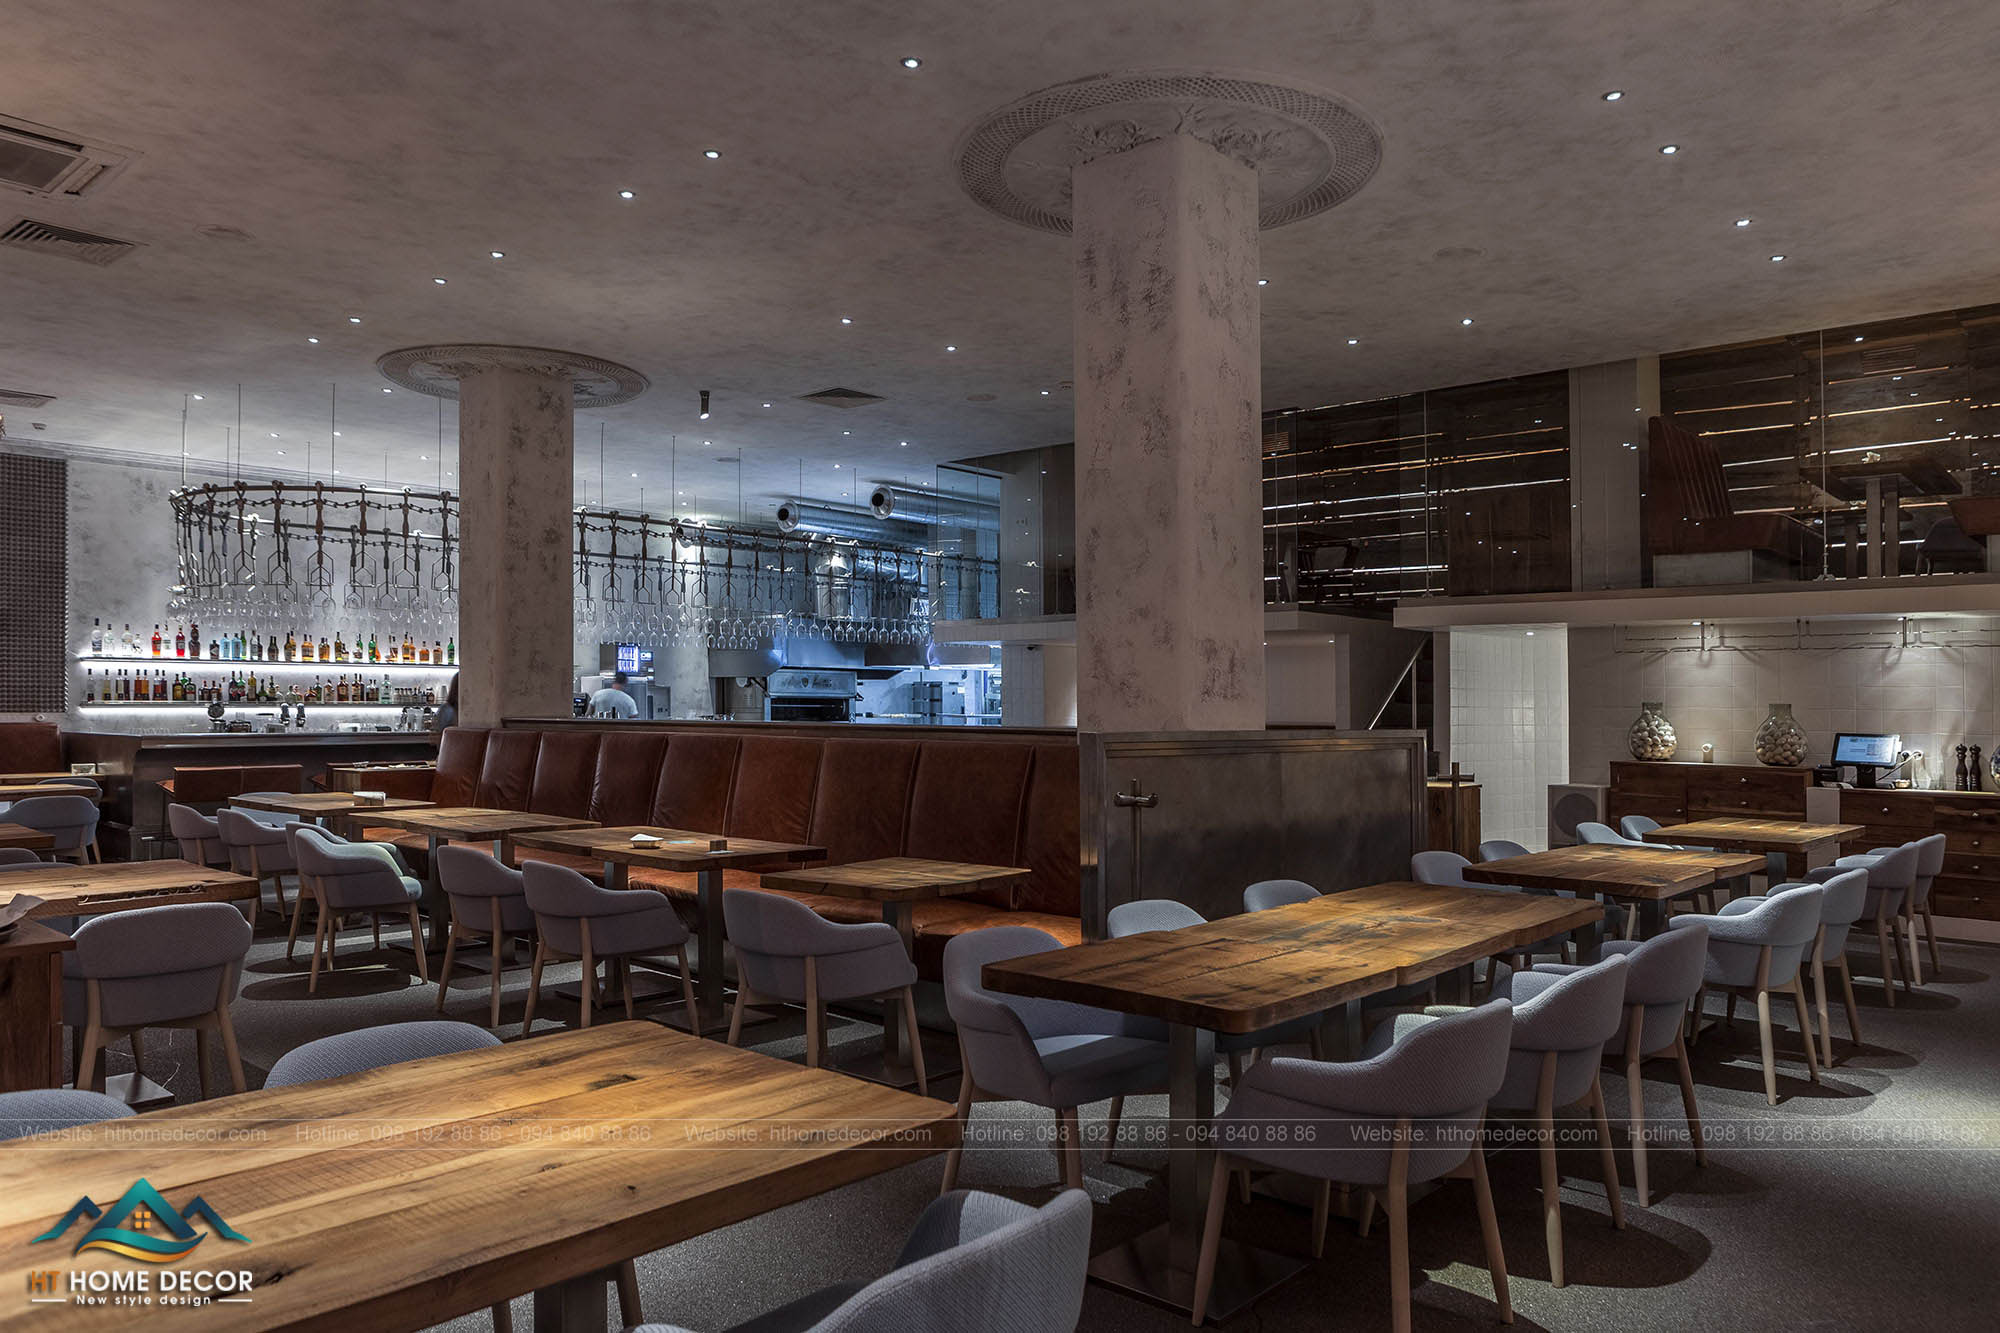 Bàn ghế trong không gian nhà hàng được sắp xếp thông minh và tận dụng nhiều nhất các không gian của nhà hàng.